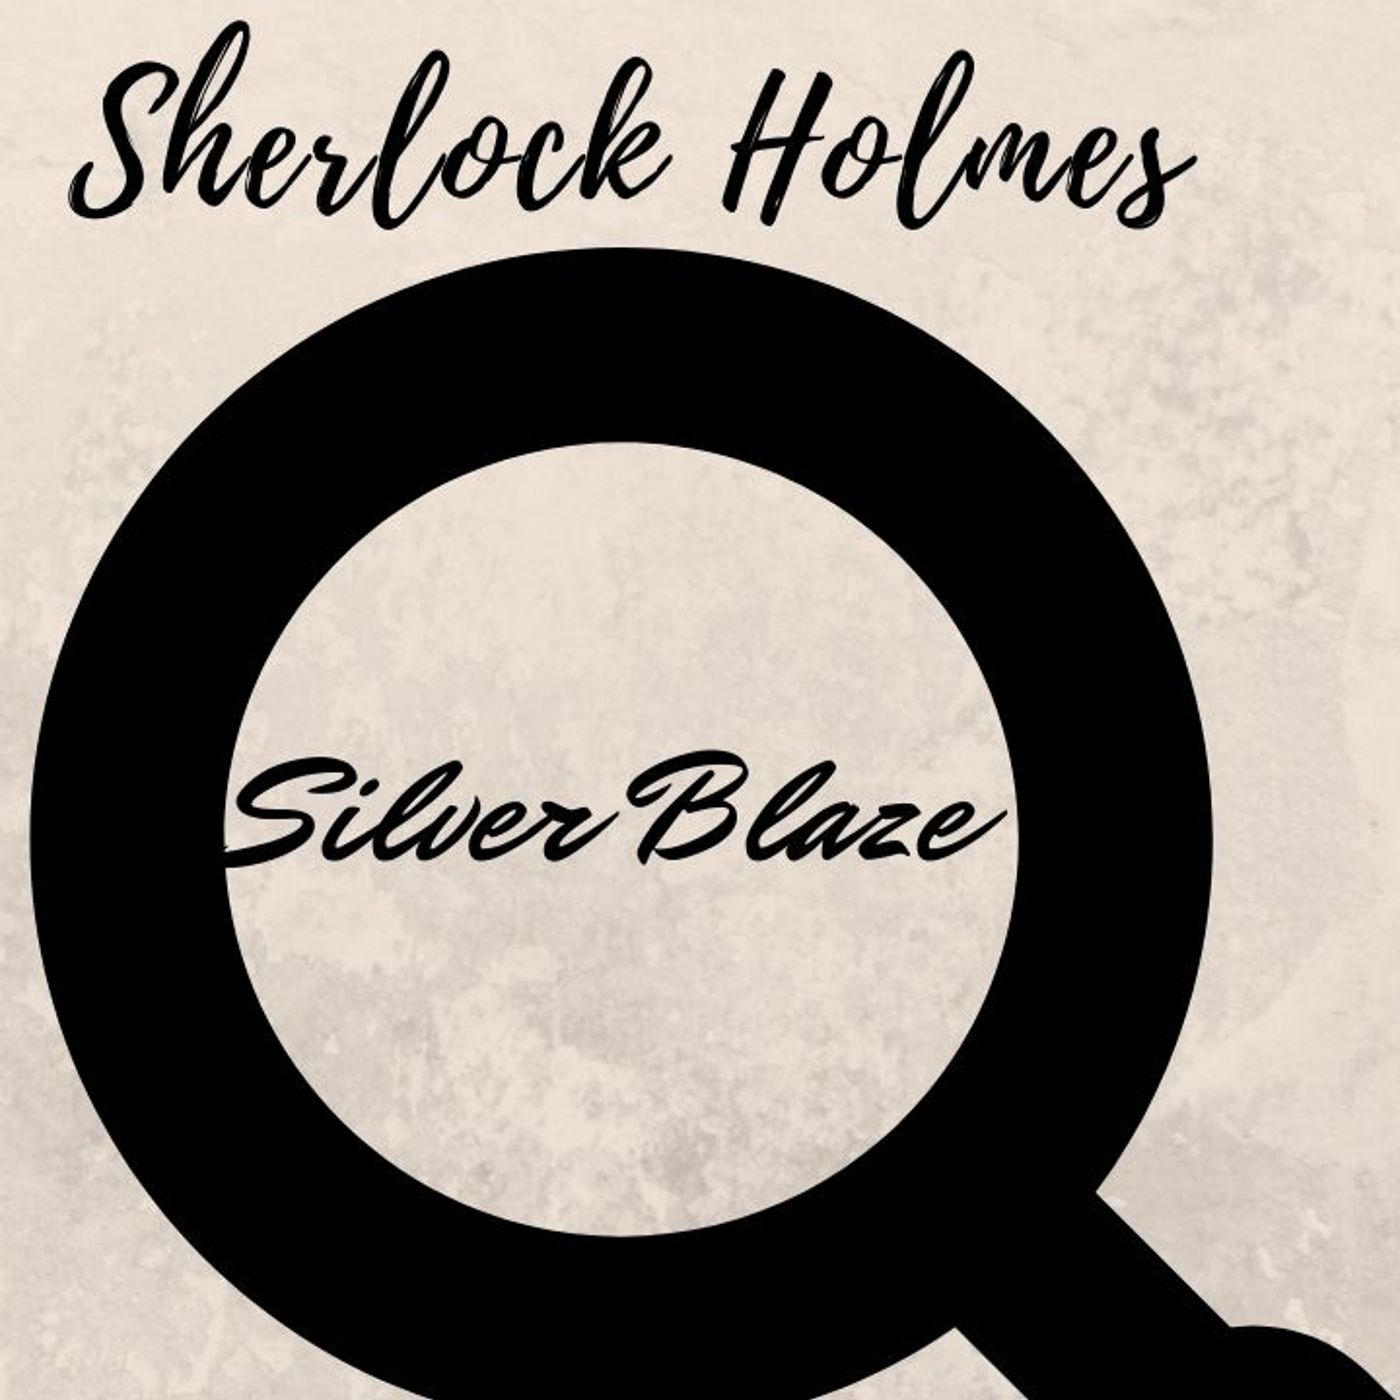 Sherlock Holmes - Silver Blaze